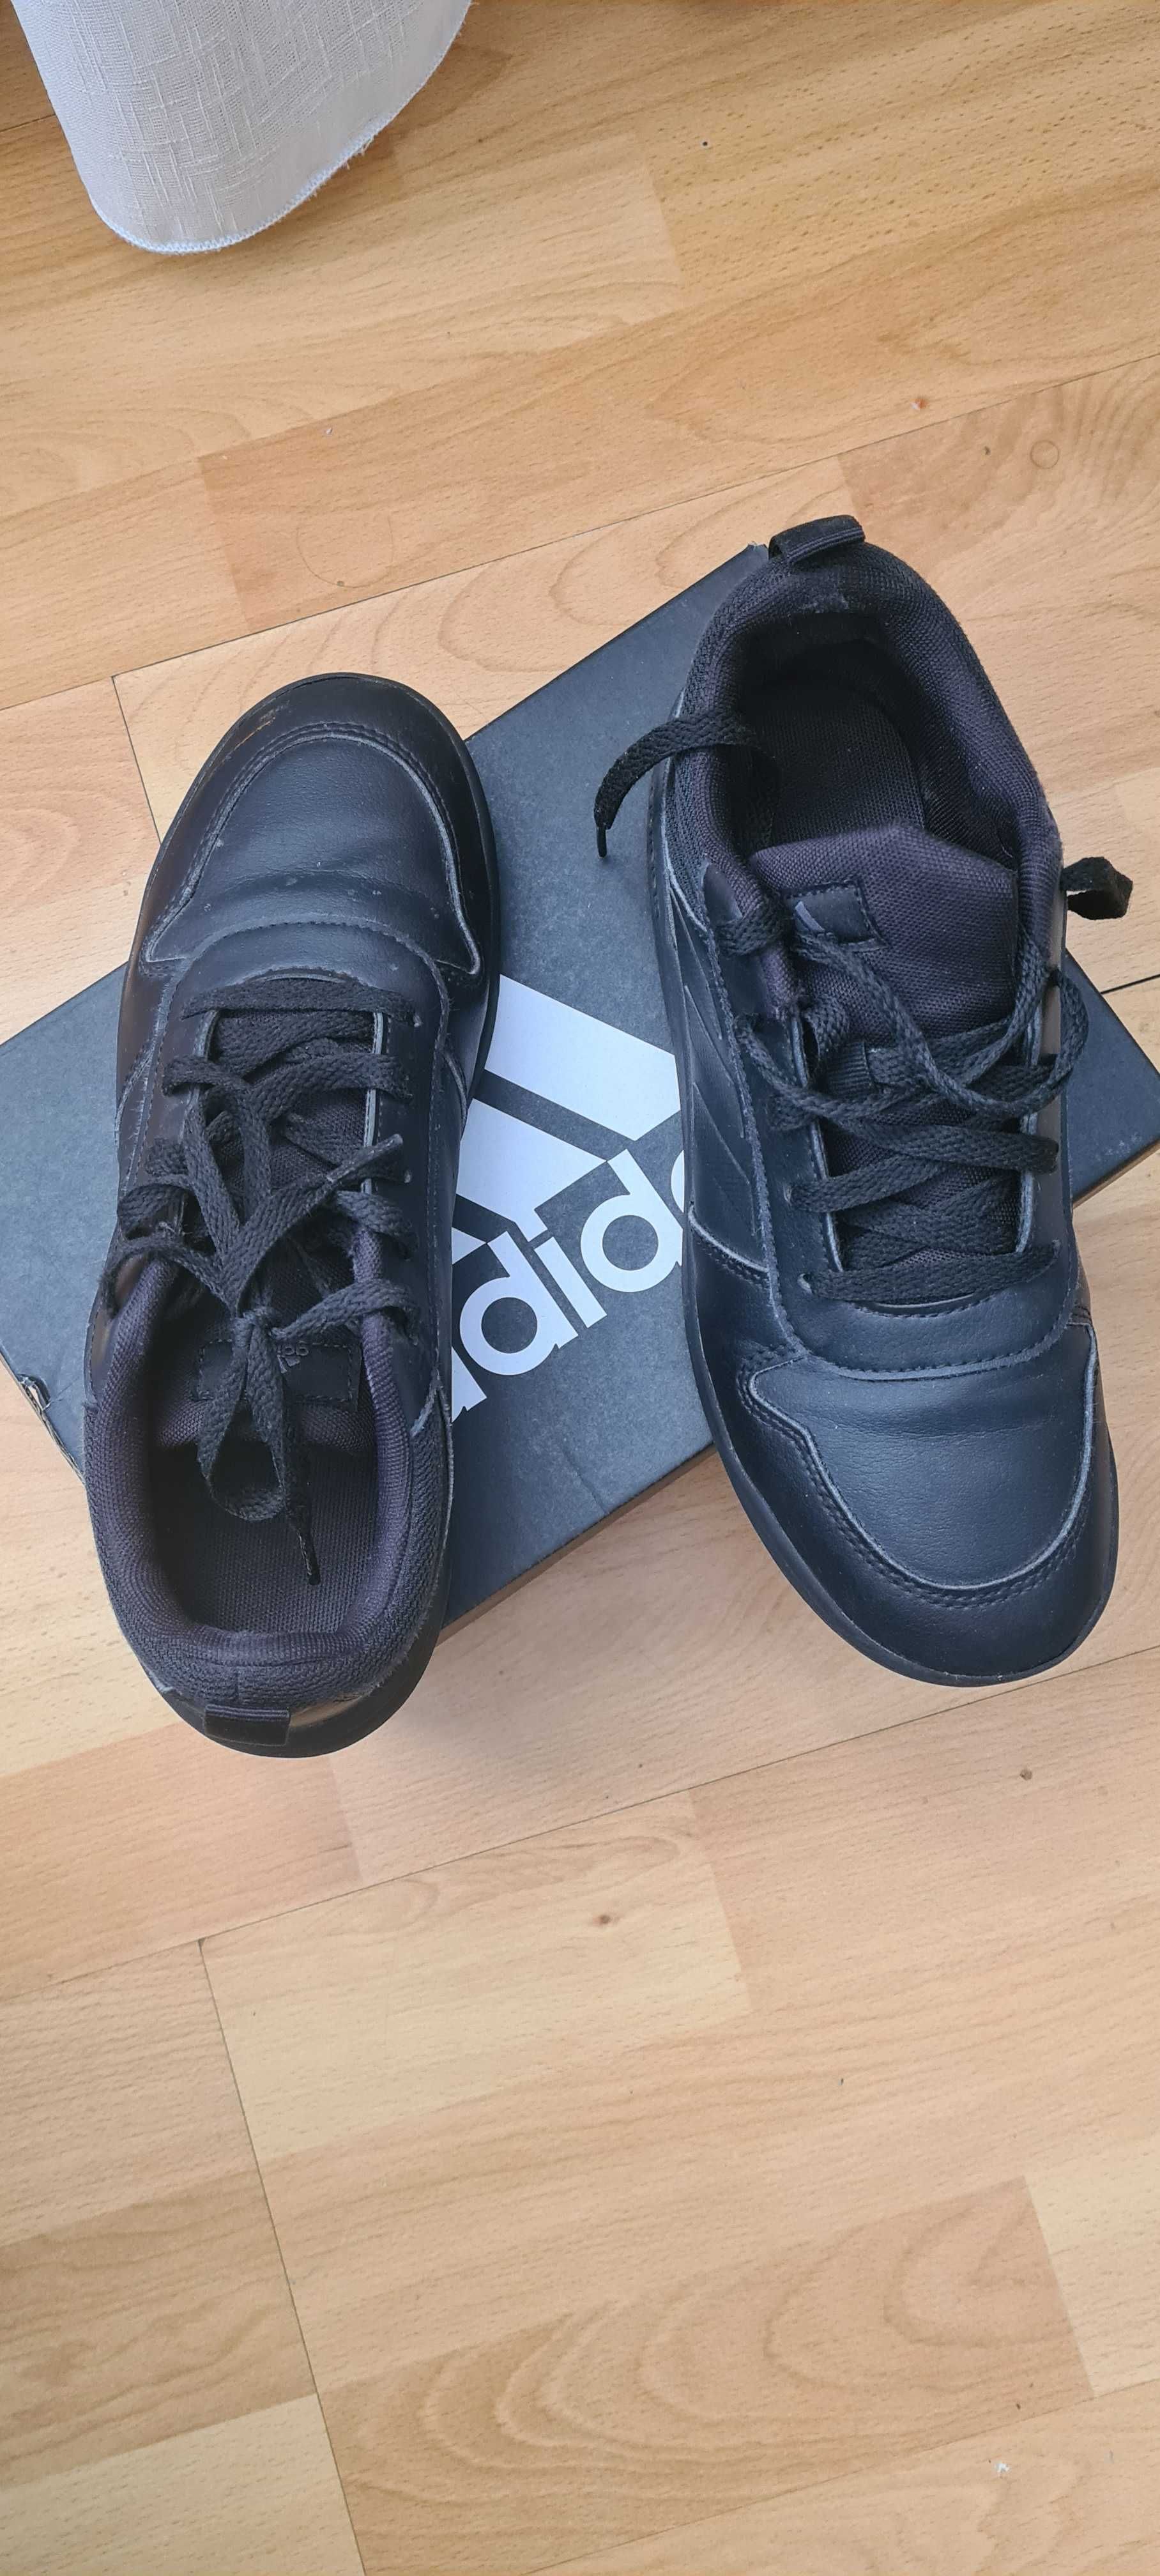 Adidas nr.38 negru, aproape noi,purtati de un copil doar de cateva ori